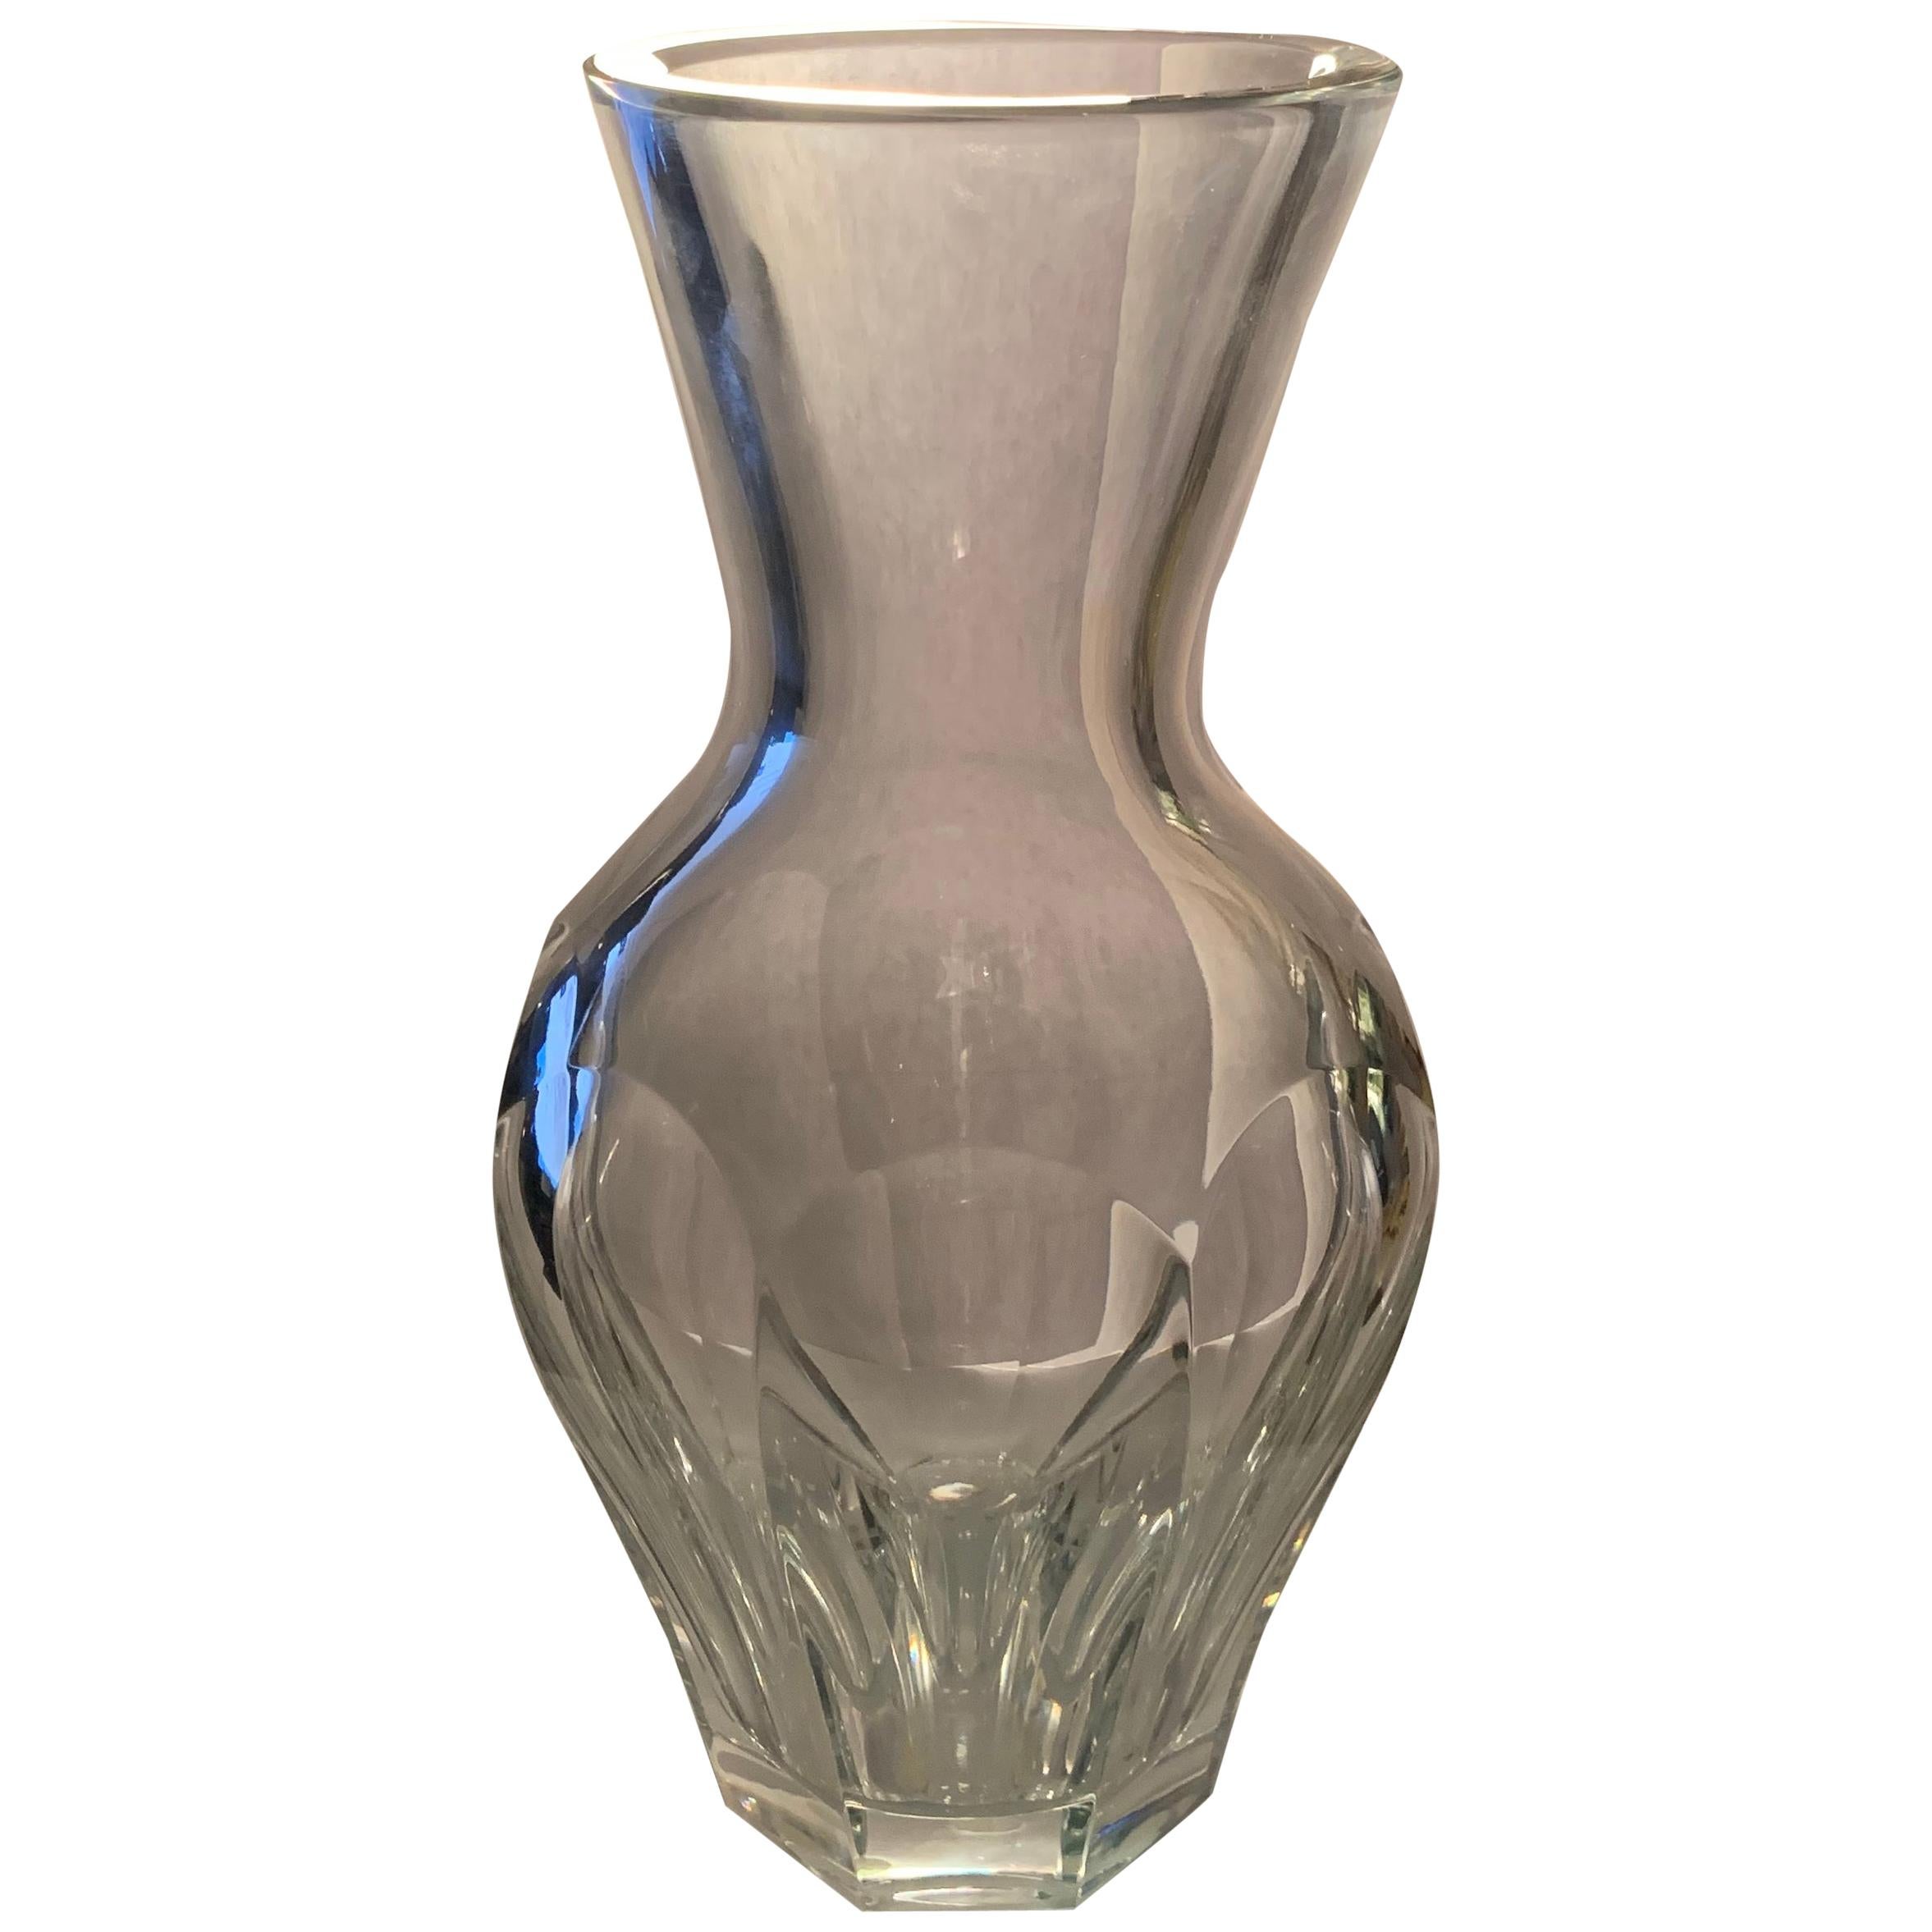 Meraviglioso vaso di cristallo firmato Baccarat Harcourt a balaustro medio